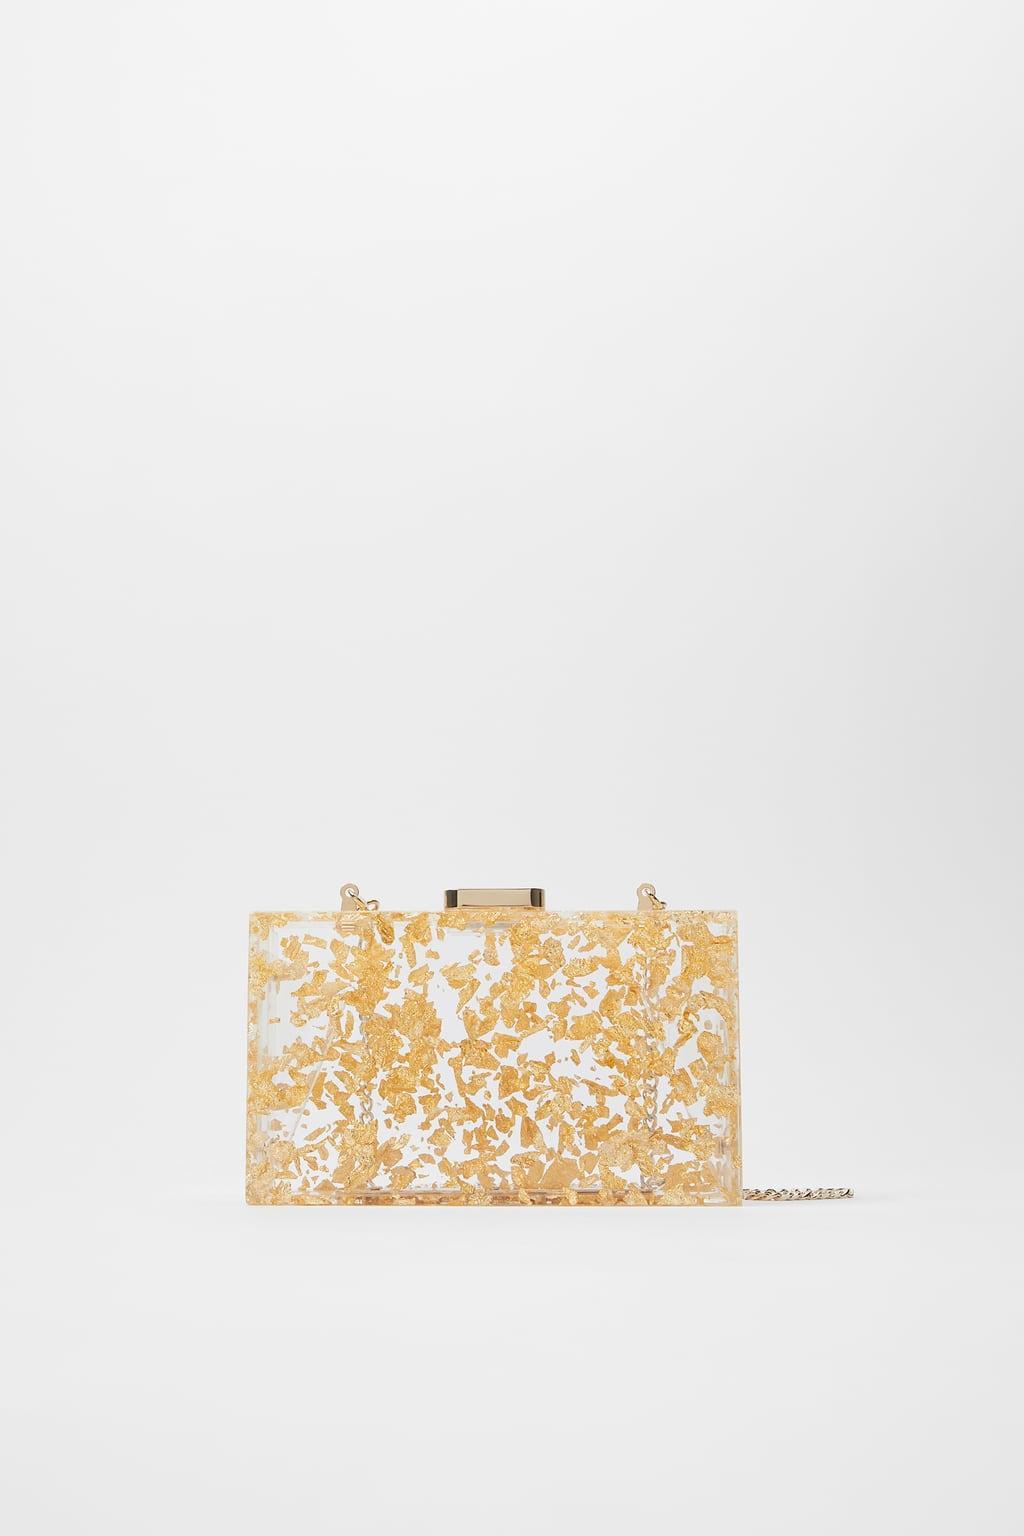 Отзыв на КОРОБЧАТЫЕ сумка с METACRYLAT В Золото из Интернет-Магазина Zara